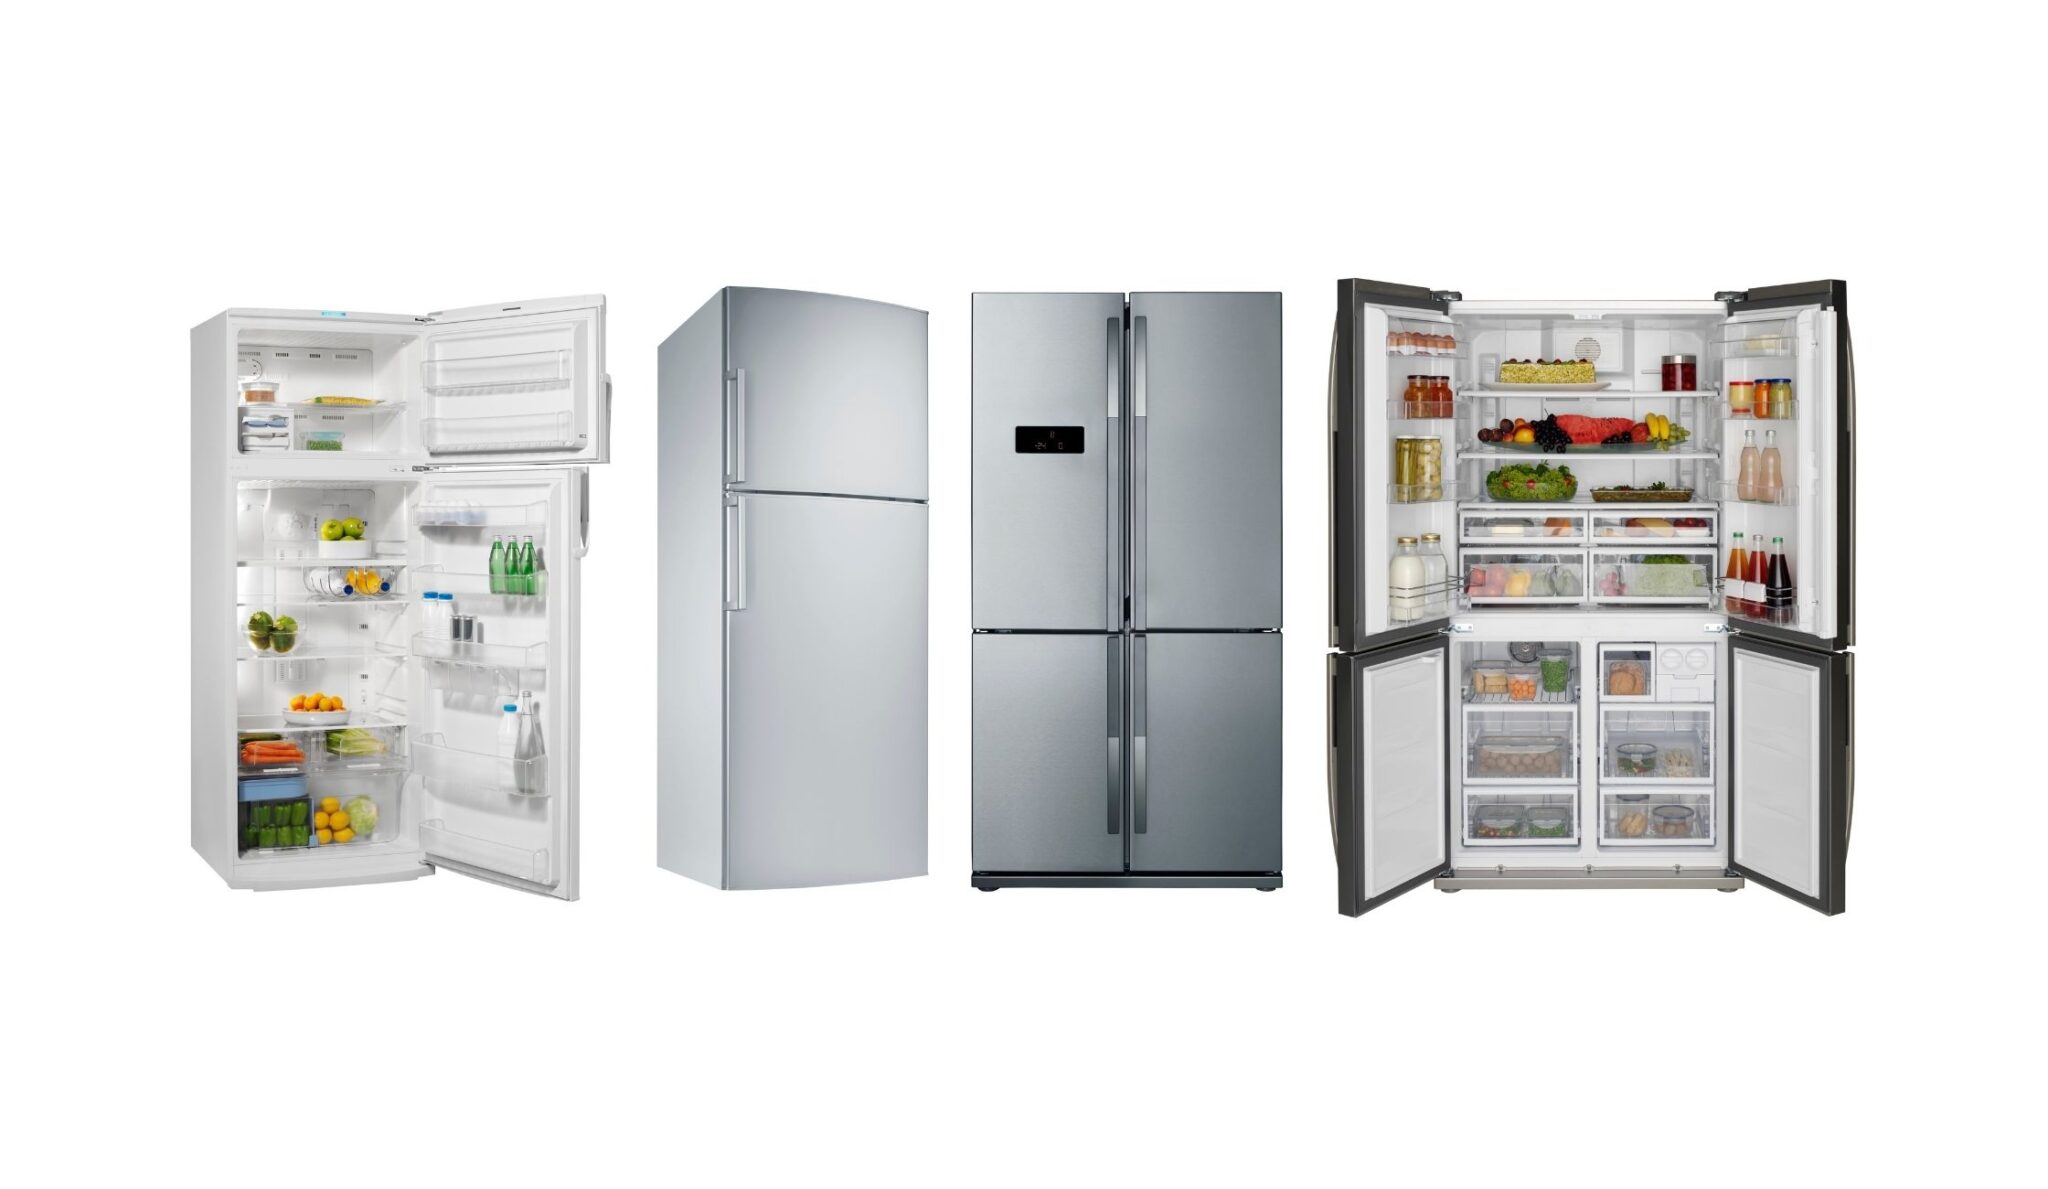 Сток холодильника. Холодильник Сток. Холодильники Beko Side by Side 2010 года. Double Door Refrigerator. Магазин бытовой техники холодильник Арес.